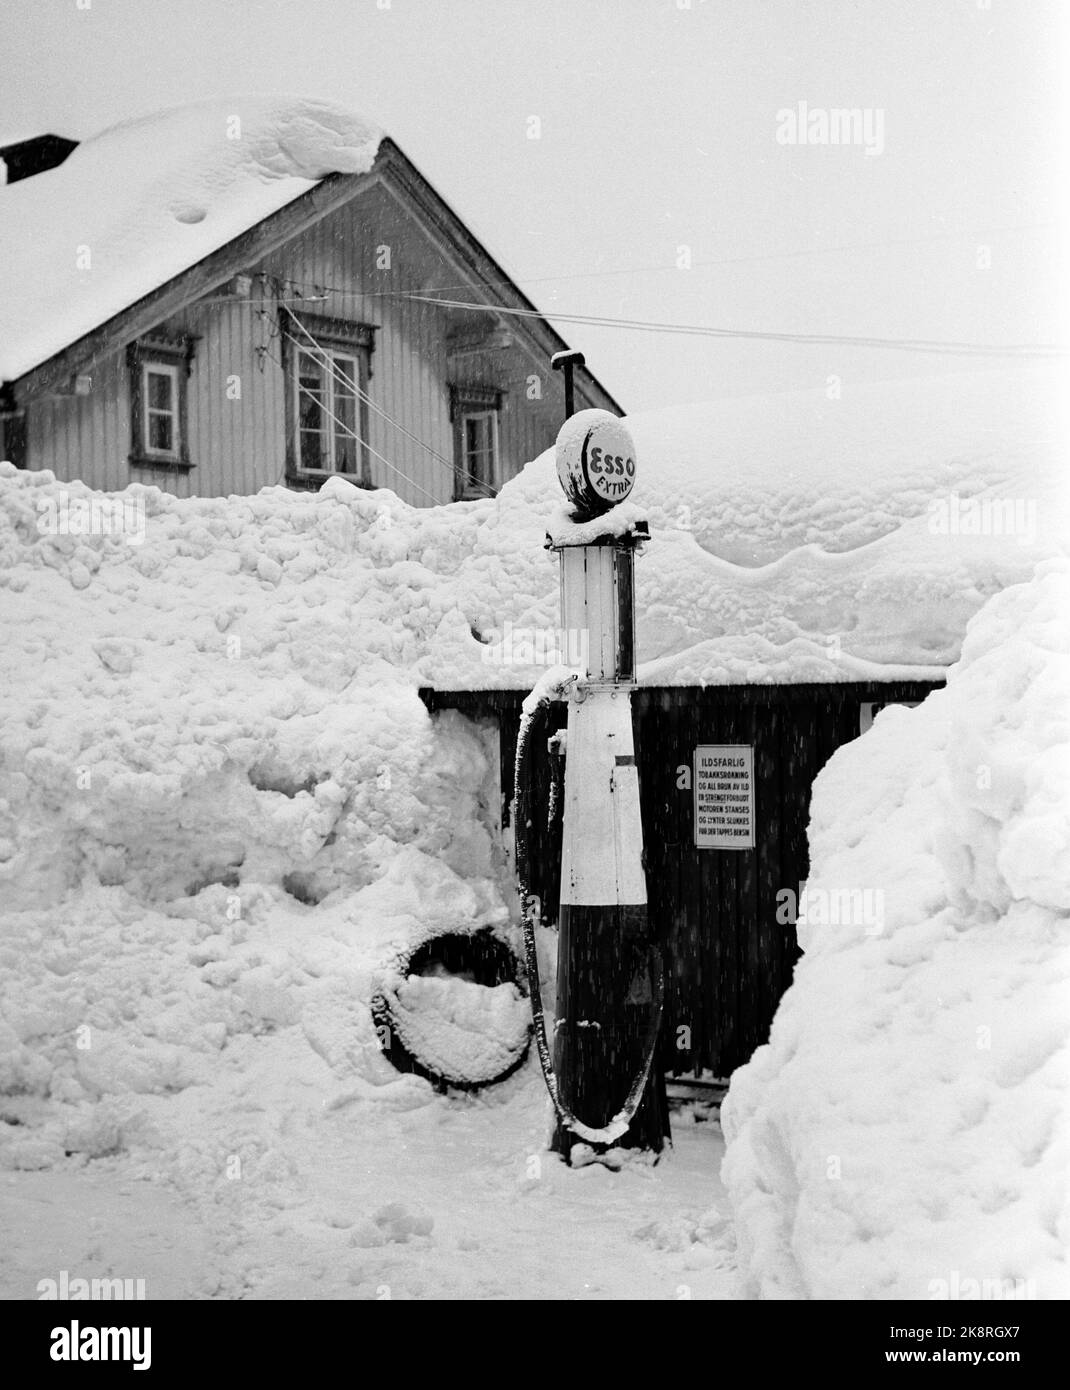 Südnorwegen, Februar 1951: Starker Schneefall über dem südlichen Teil des Landes verursachte wochenlang Chaos. Hier ist eine verringerte Tankstelle / Benzinpumpe mit Esso Logo. Foto: Arne Kjus / Aktuell / NTB Stockfoto